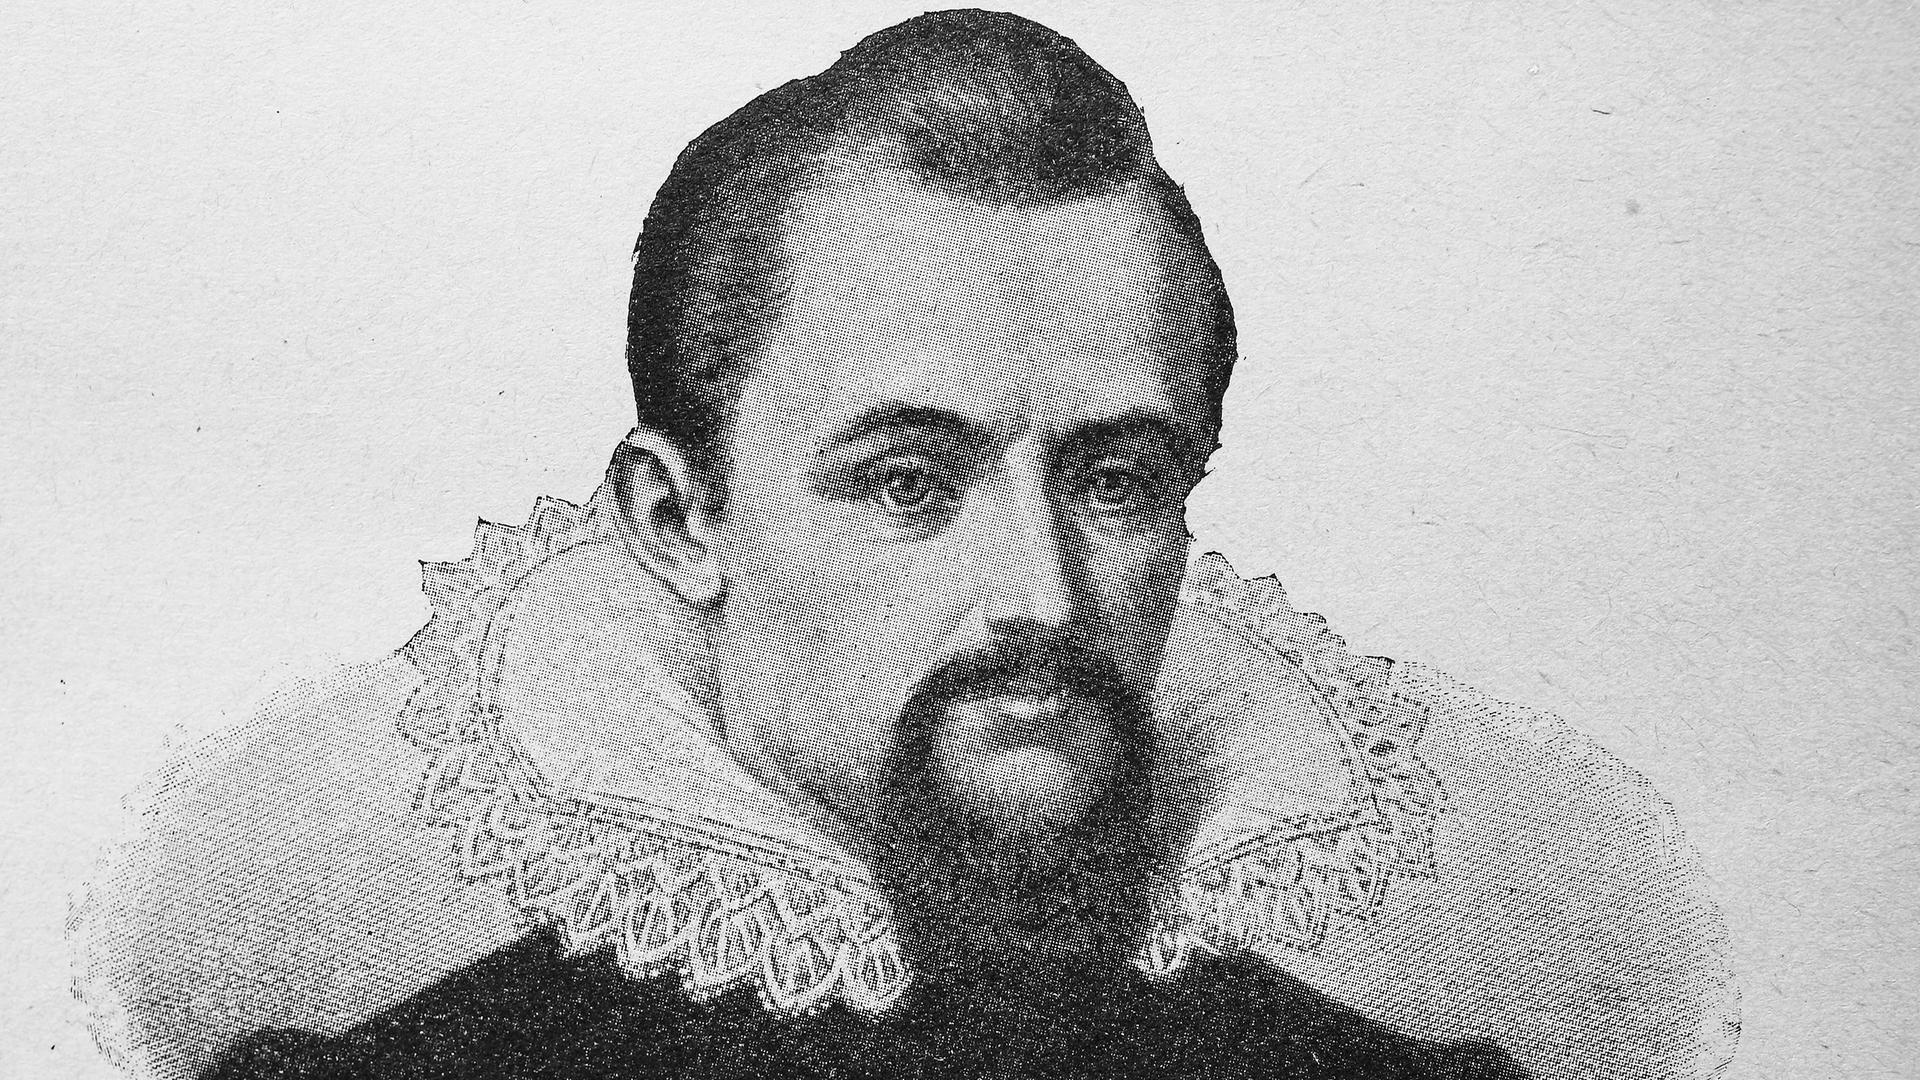 Johannes Kepler (27/12/1571 - 15/11/1630), filósofo natural alemán, matemático, astrónomo, astrólogo, óptico y teólogo protestante, grabado del siglo XIX.